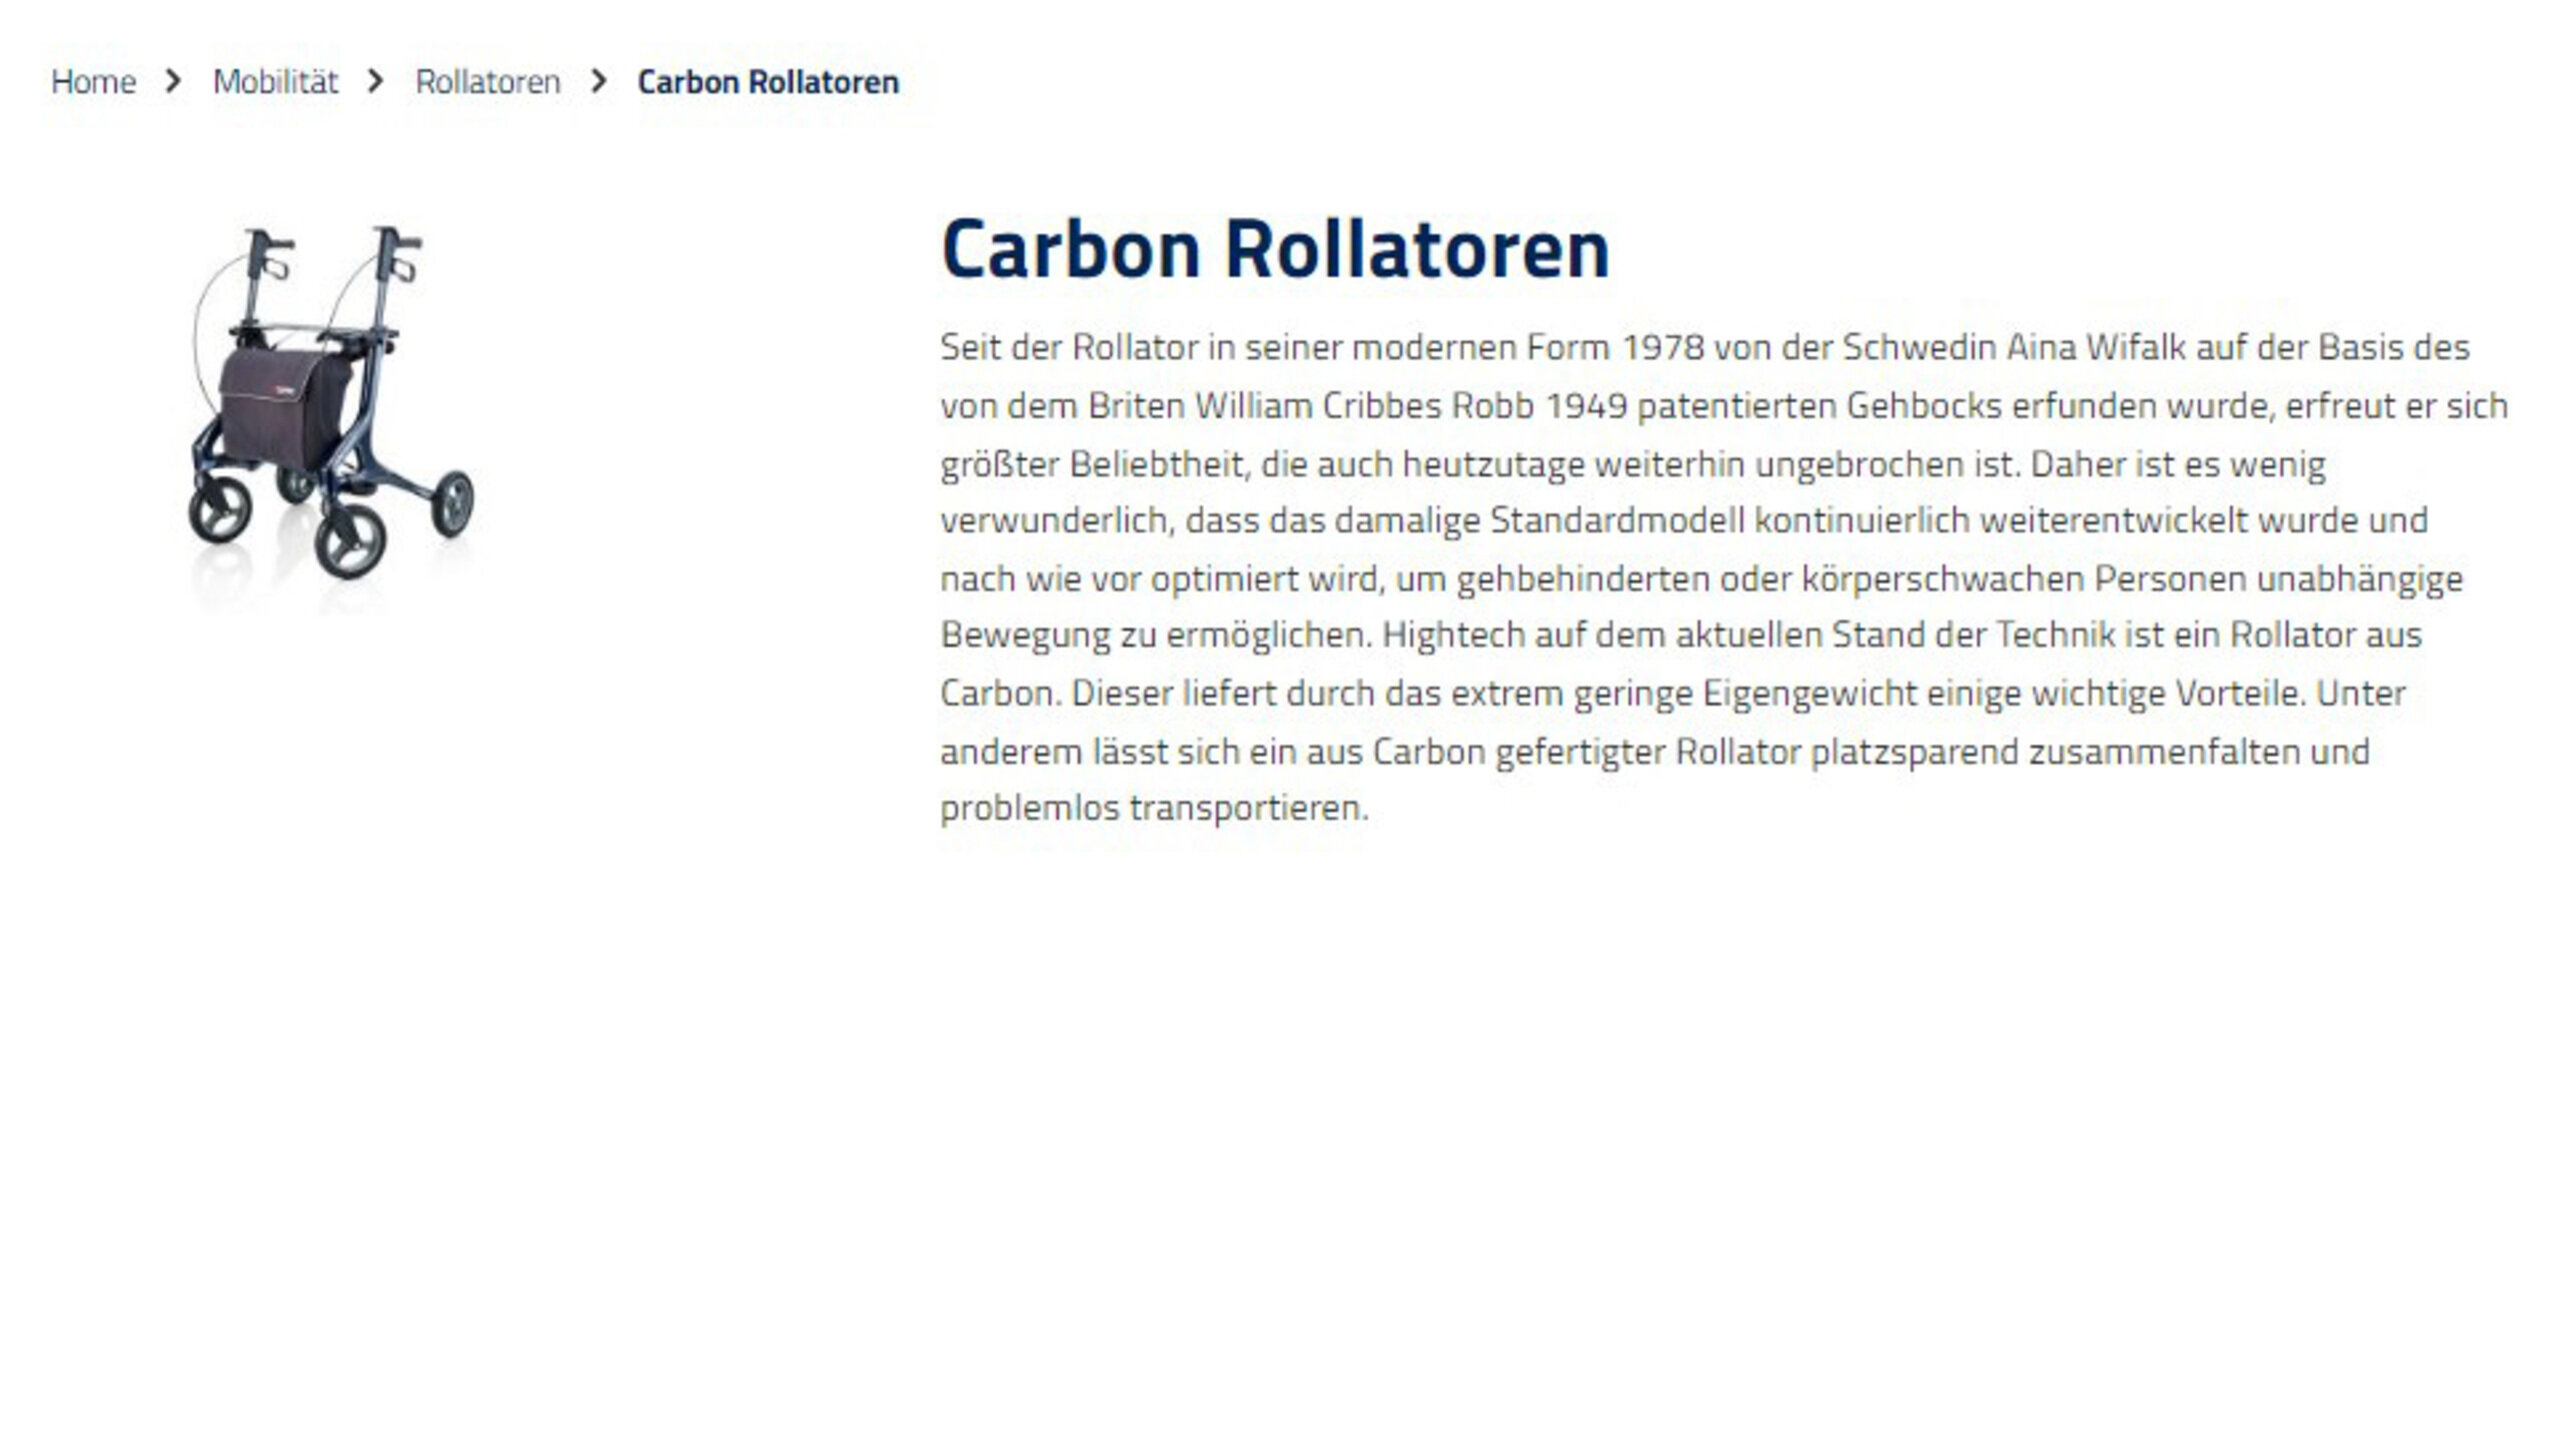 Kategorie - Mobilität > Rollatoren > Carbon Rollatoren | © Seeger -Das Gesundheitshaus